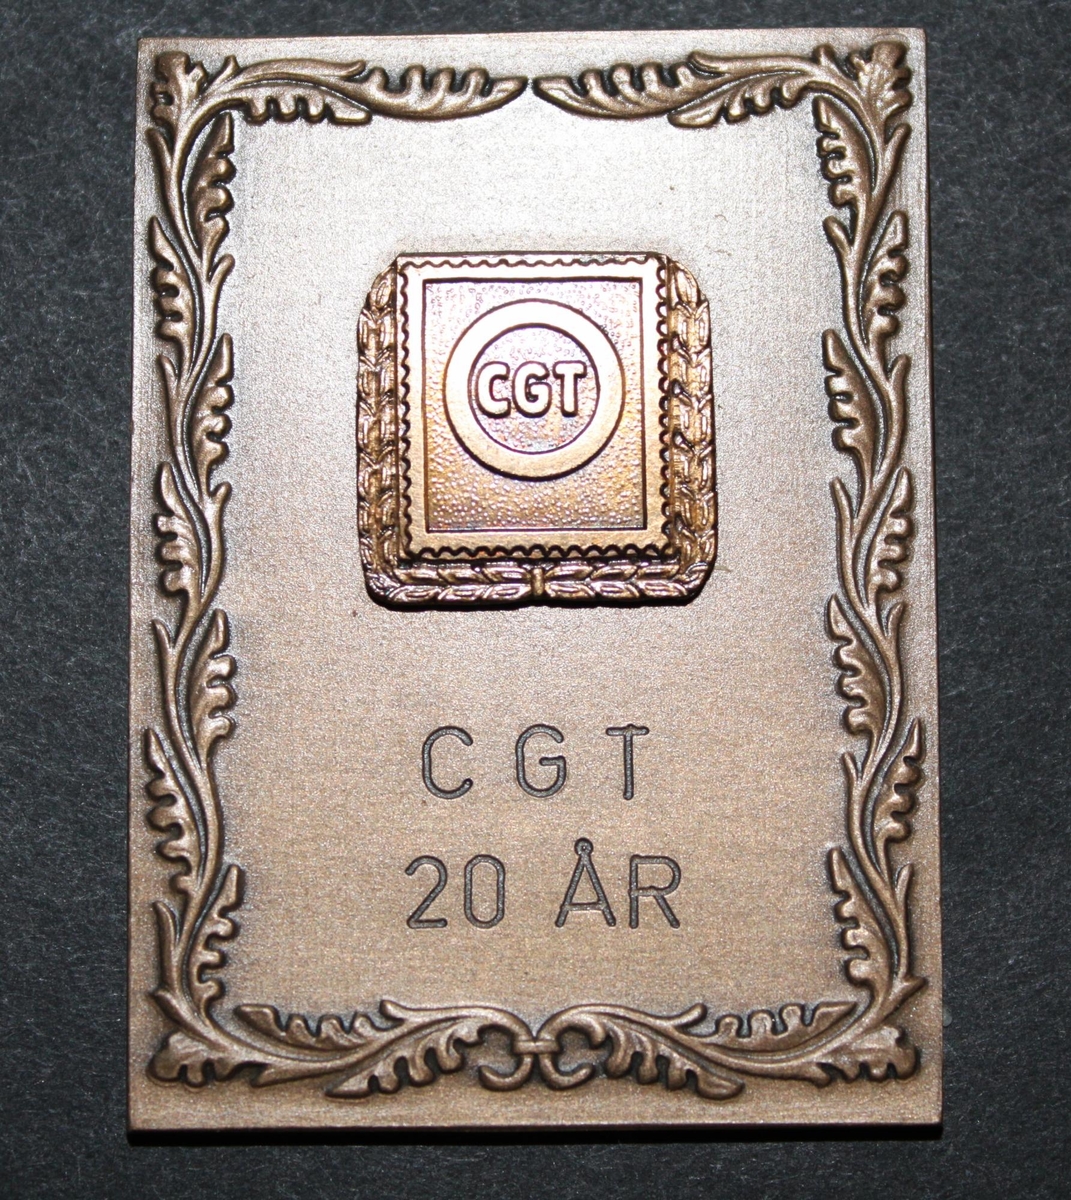 Plakett i brons, rektangulär. Längs kanten slingrar
sigbladrankor. På övre halvan, i centrum, ett frimärksliknande
emblemmärkt "CGT" inom en cirkulär ram. Kring emblemet en krans. På
undrehalvan text "CGT 20 ÅR" på två rader.